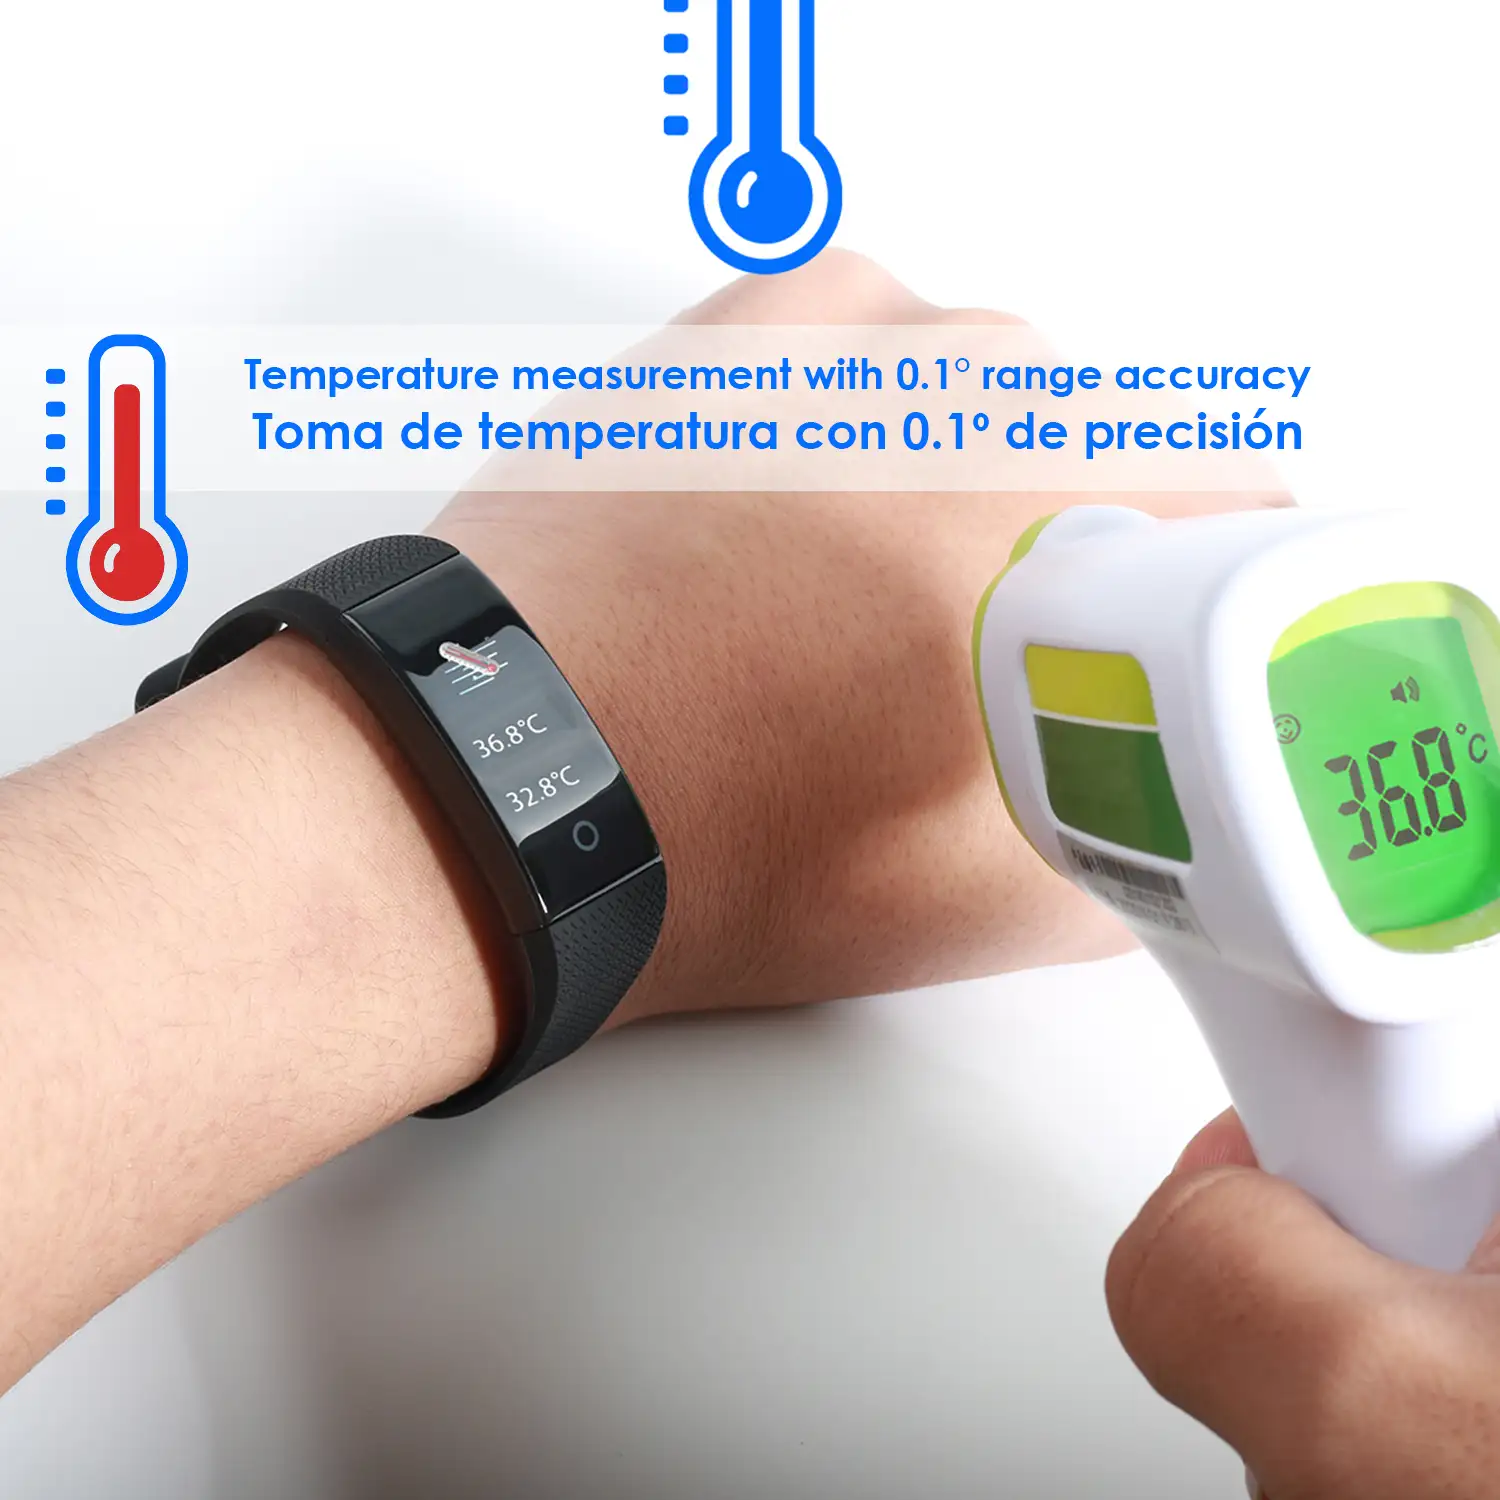 Pulsera inteligente QW18T con medición de temperatura corporal, monitor cardíaco y modo multideporte.